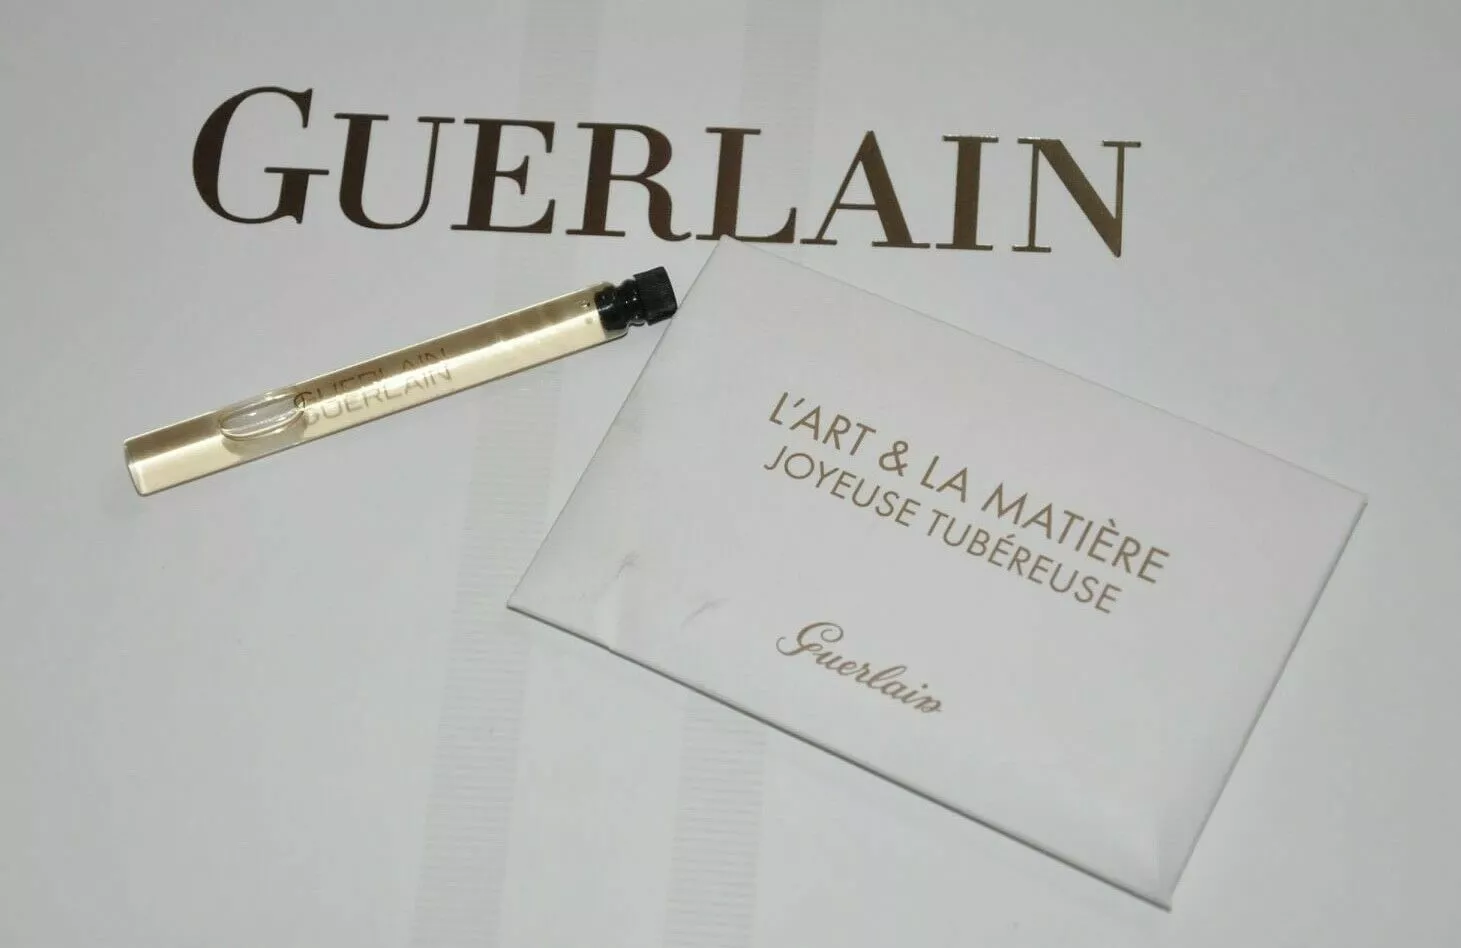 Joyeuse Tubereuse From L'art Et La Matiere Guerlain Edp 3.8ml Exclusive - $36.00